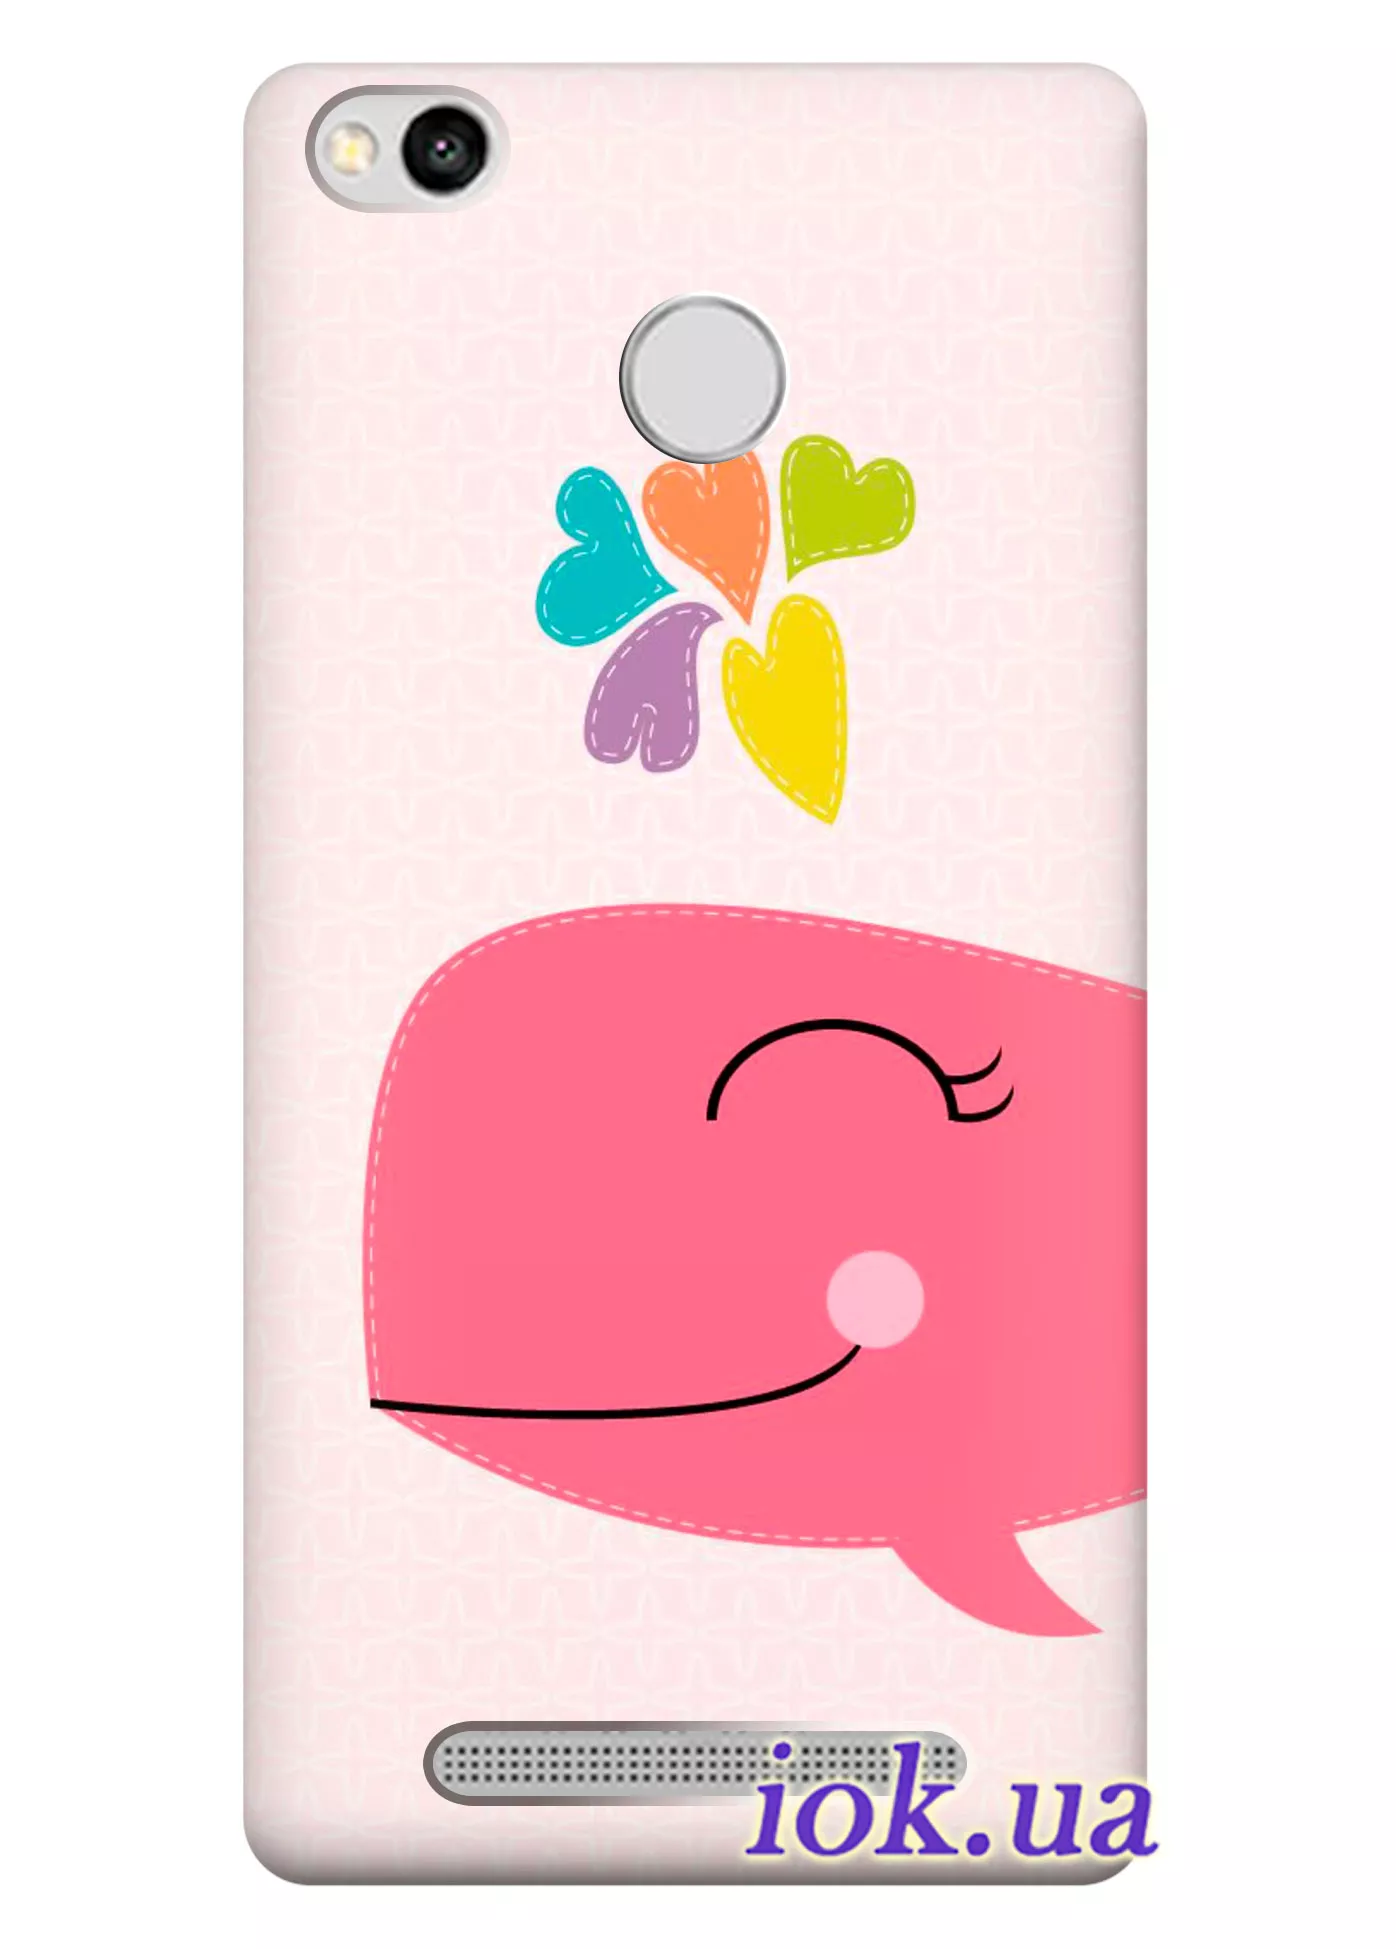 Чехол для Xiaomi Redmi 3 Pro - Розовый Кит